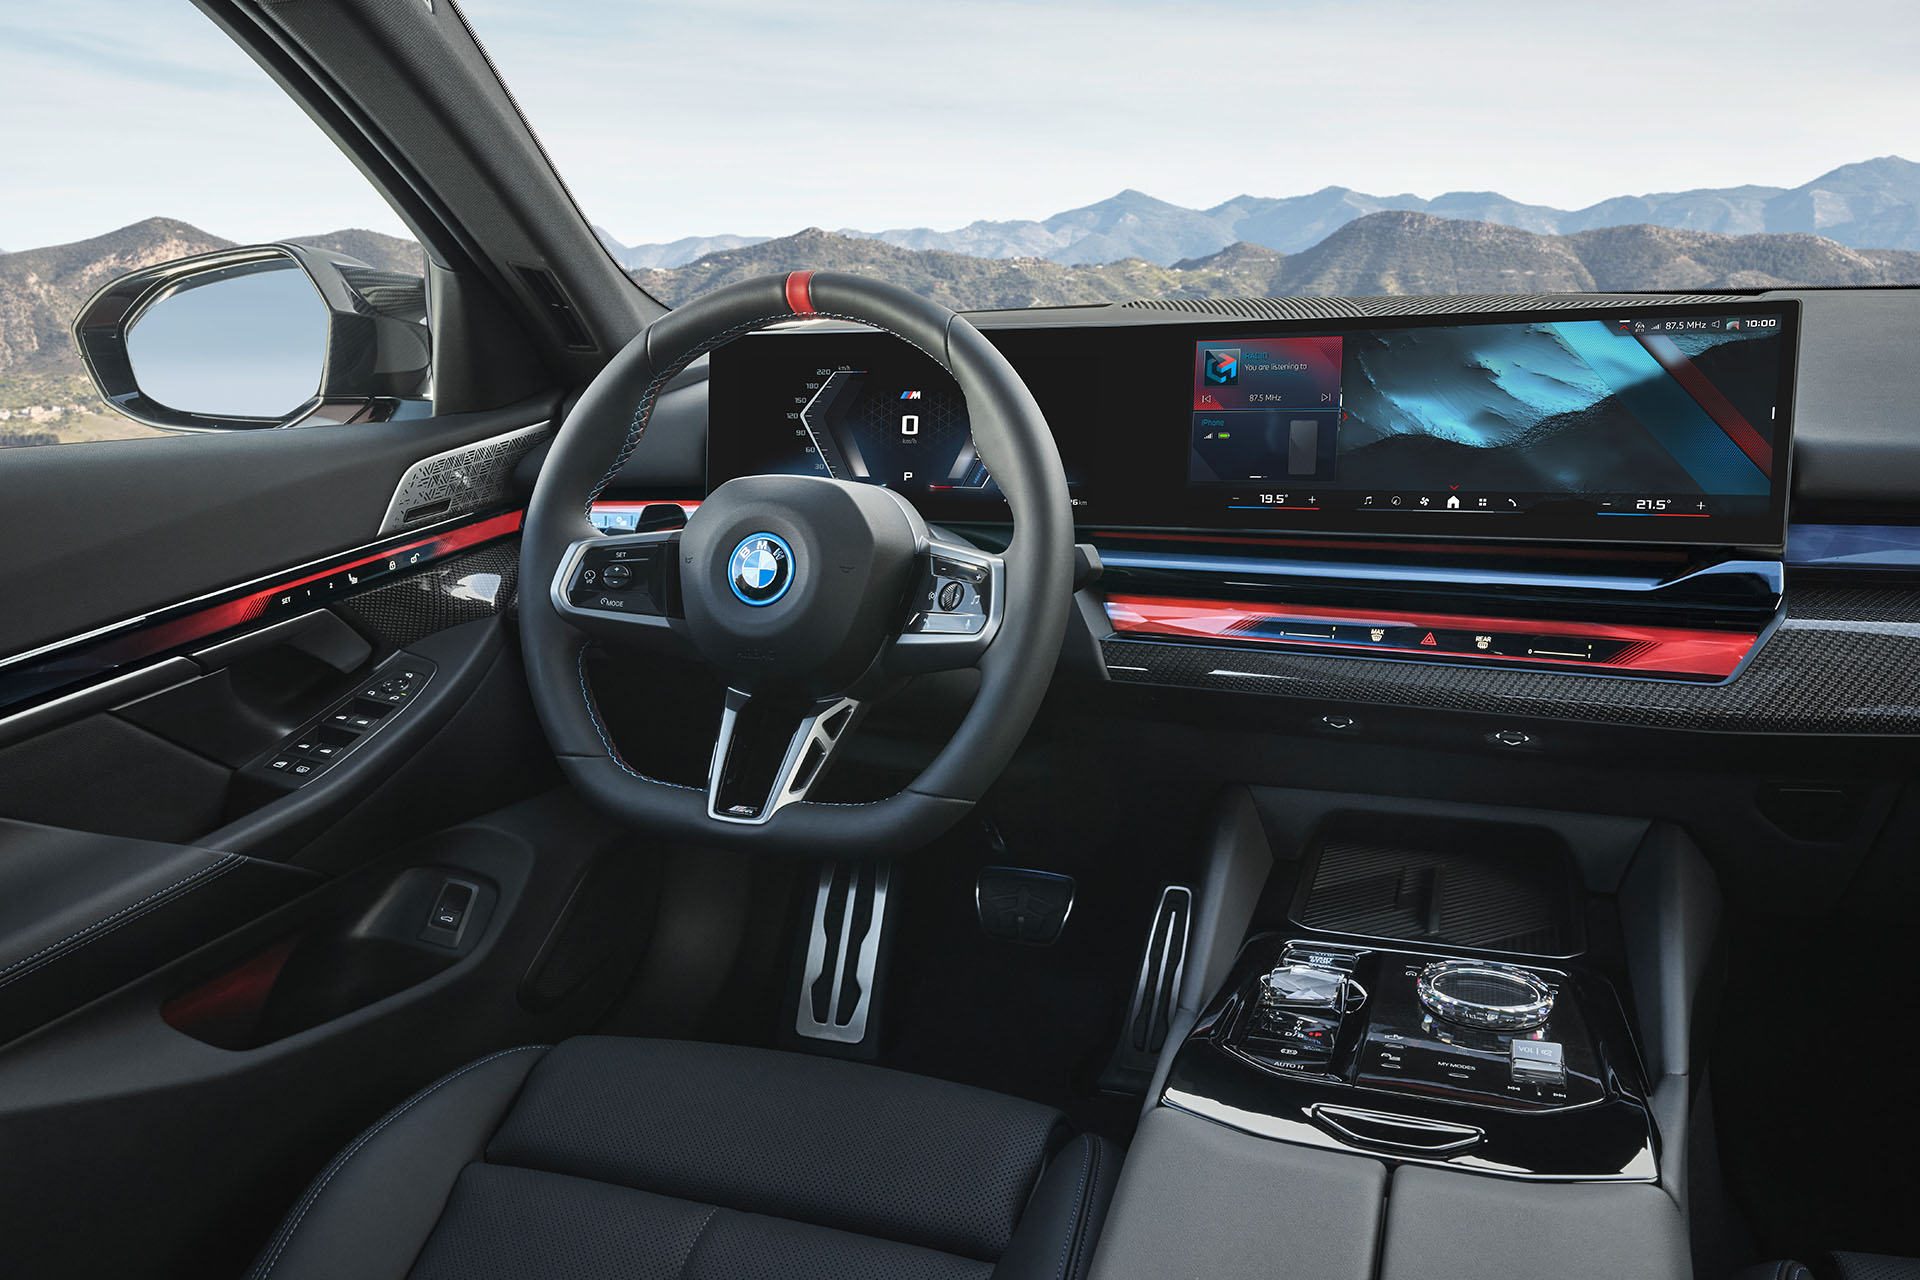 BMW i5 M60 EfficiencyCoach для повышения эффективности